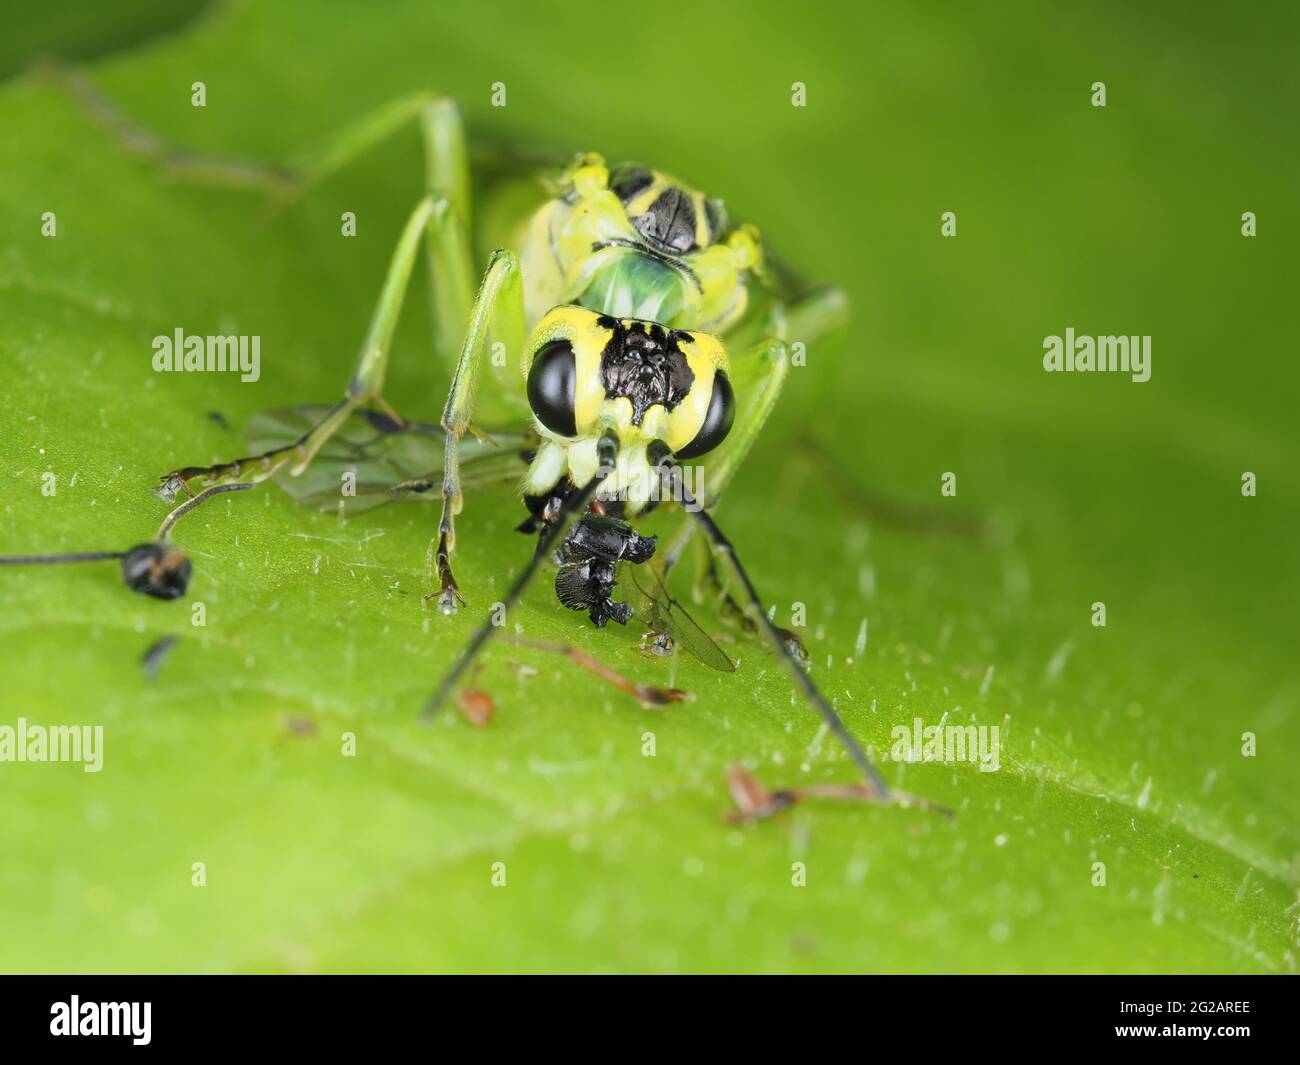 Mouche verte (très probablement Tenthredo rhammisia) manger des proies - macro insecte Banque D'Images